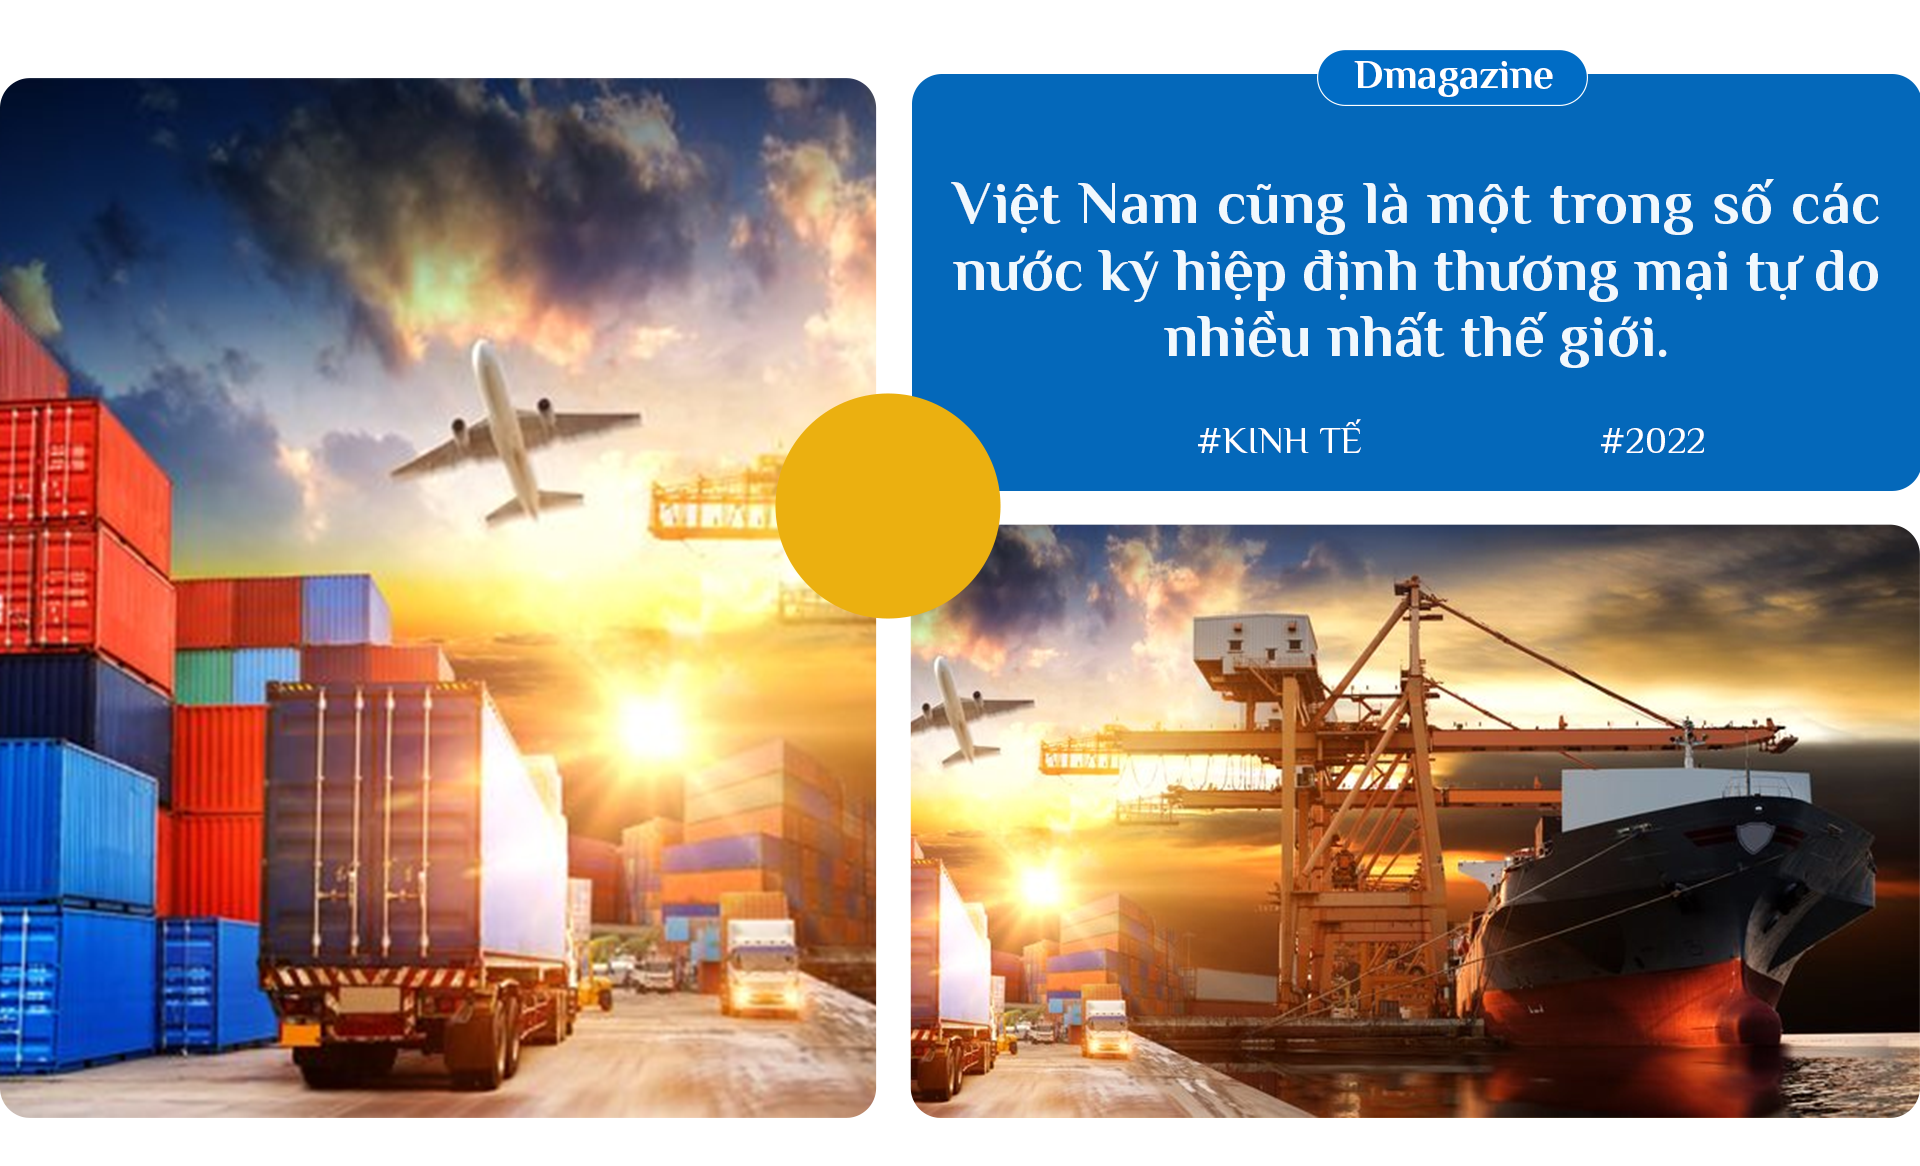 Kinh tế Việt Nam 2022, chuyện lội ngược dòng và chìa khóa tăng trưởng 2023 - 9